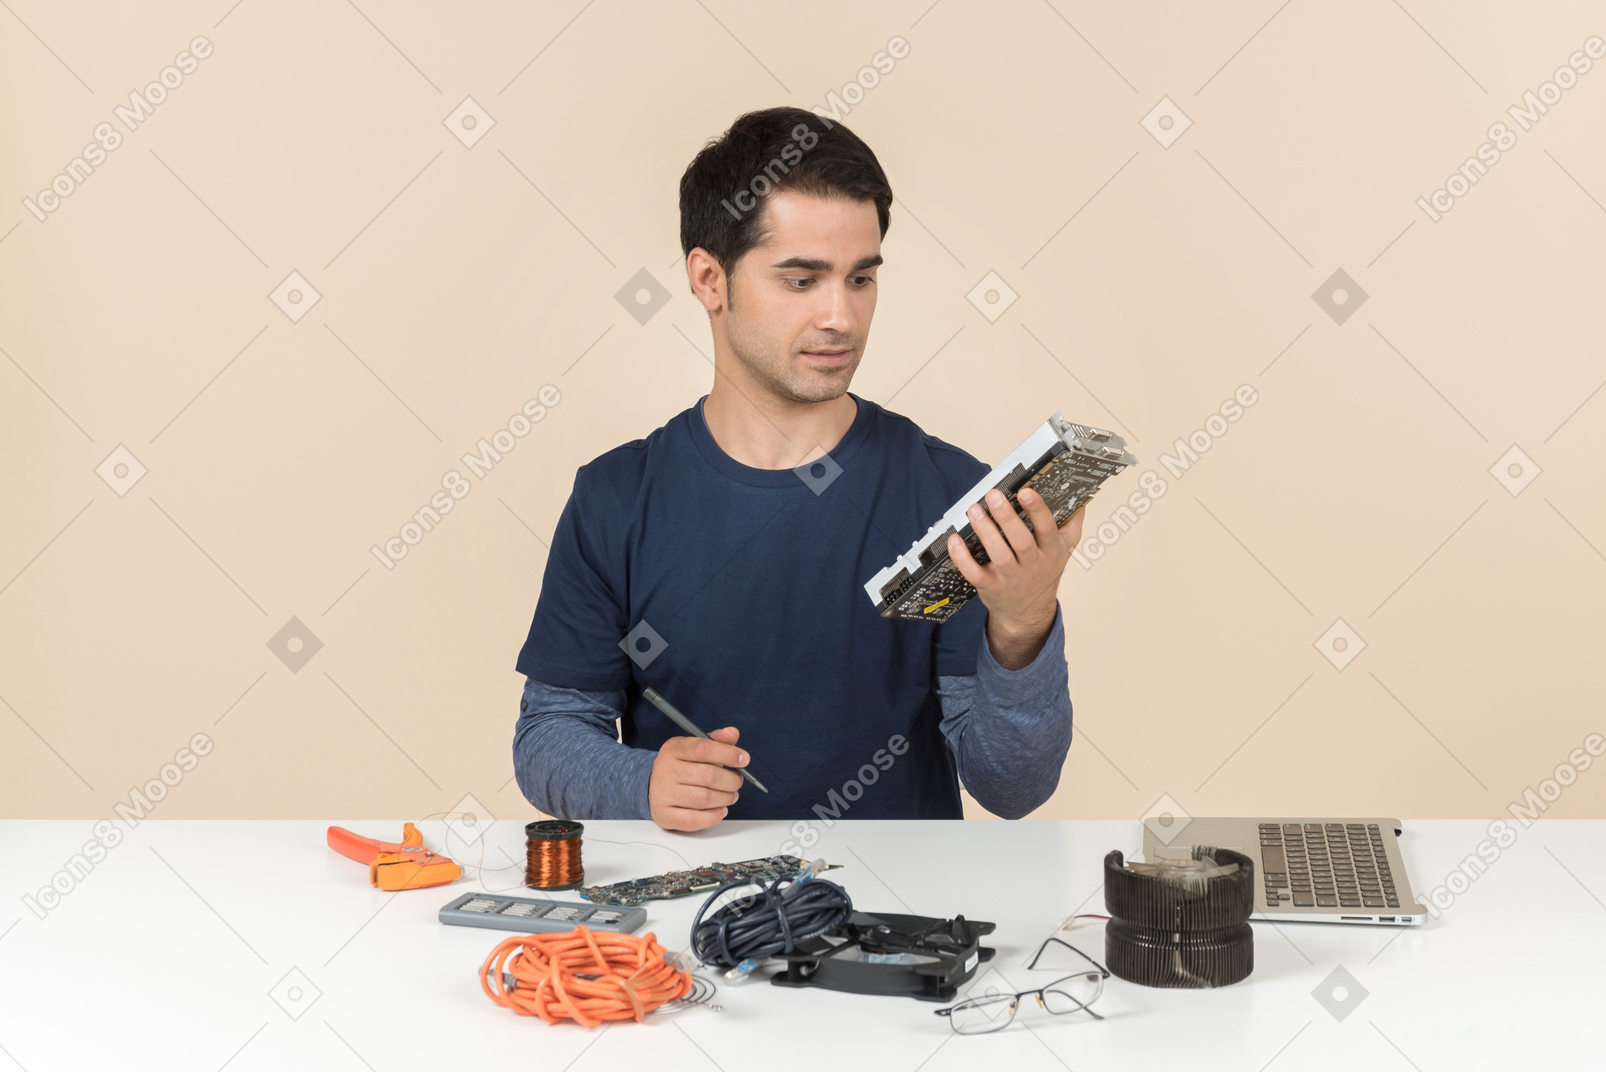 Молодой человек в синей одежде, работающий с деталями компьютера